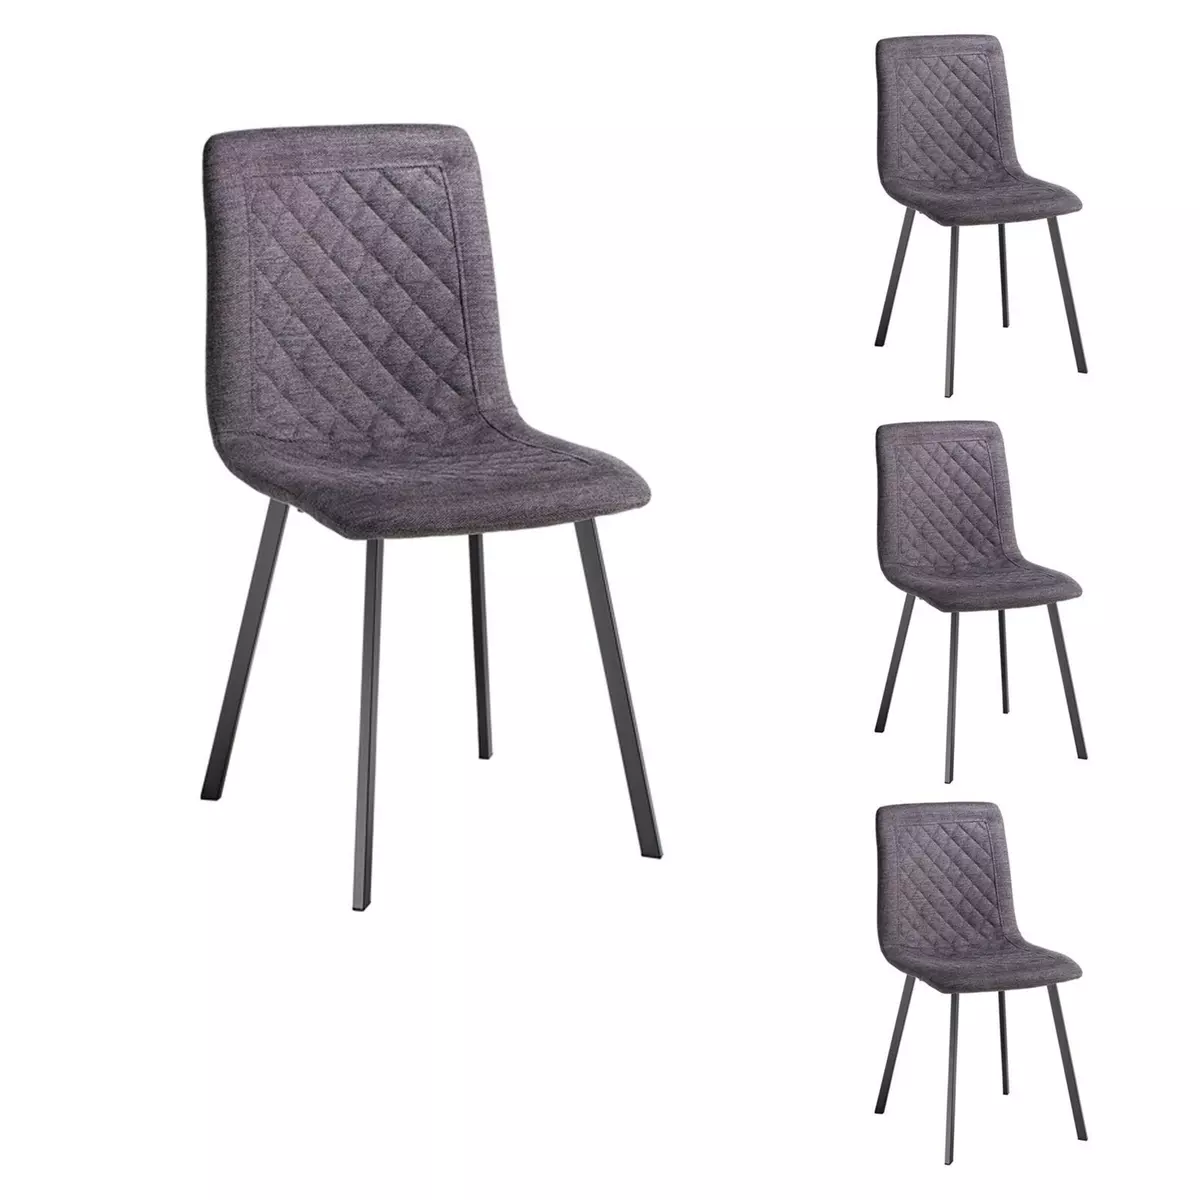 IDIMEX Lot de 4 chaises TREVISO avec revêtement en tissu et structure en métal noir, chaise de salle à manger coloris gris